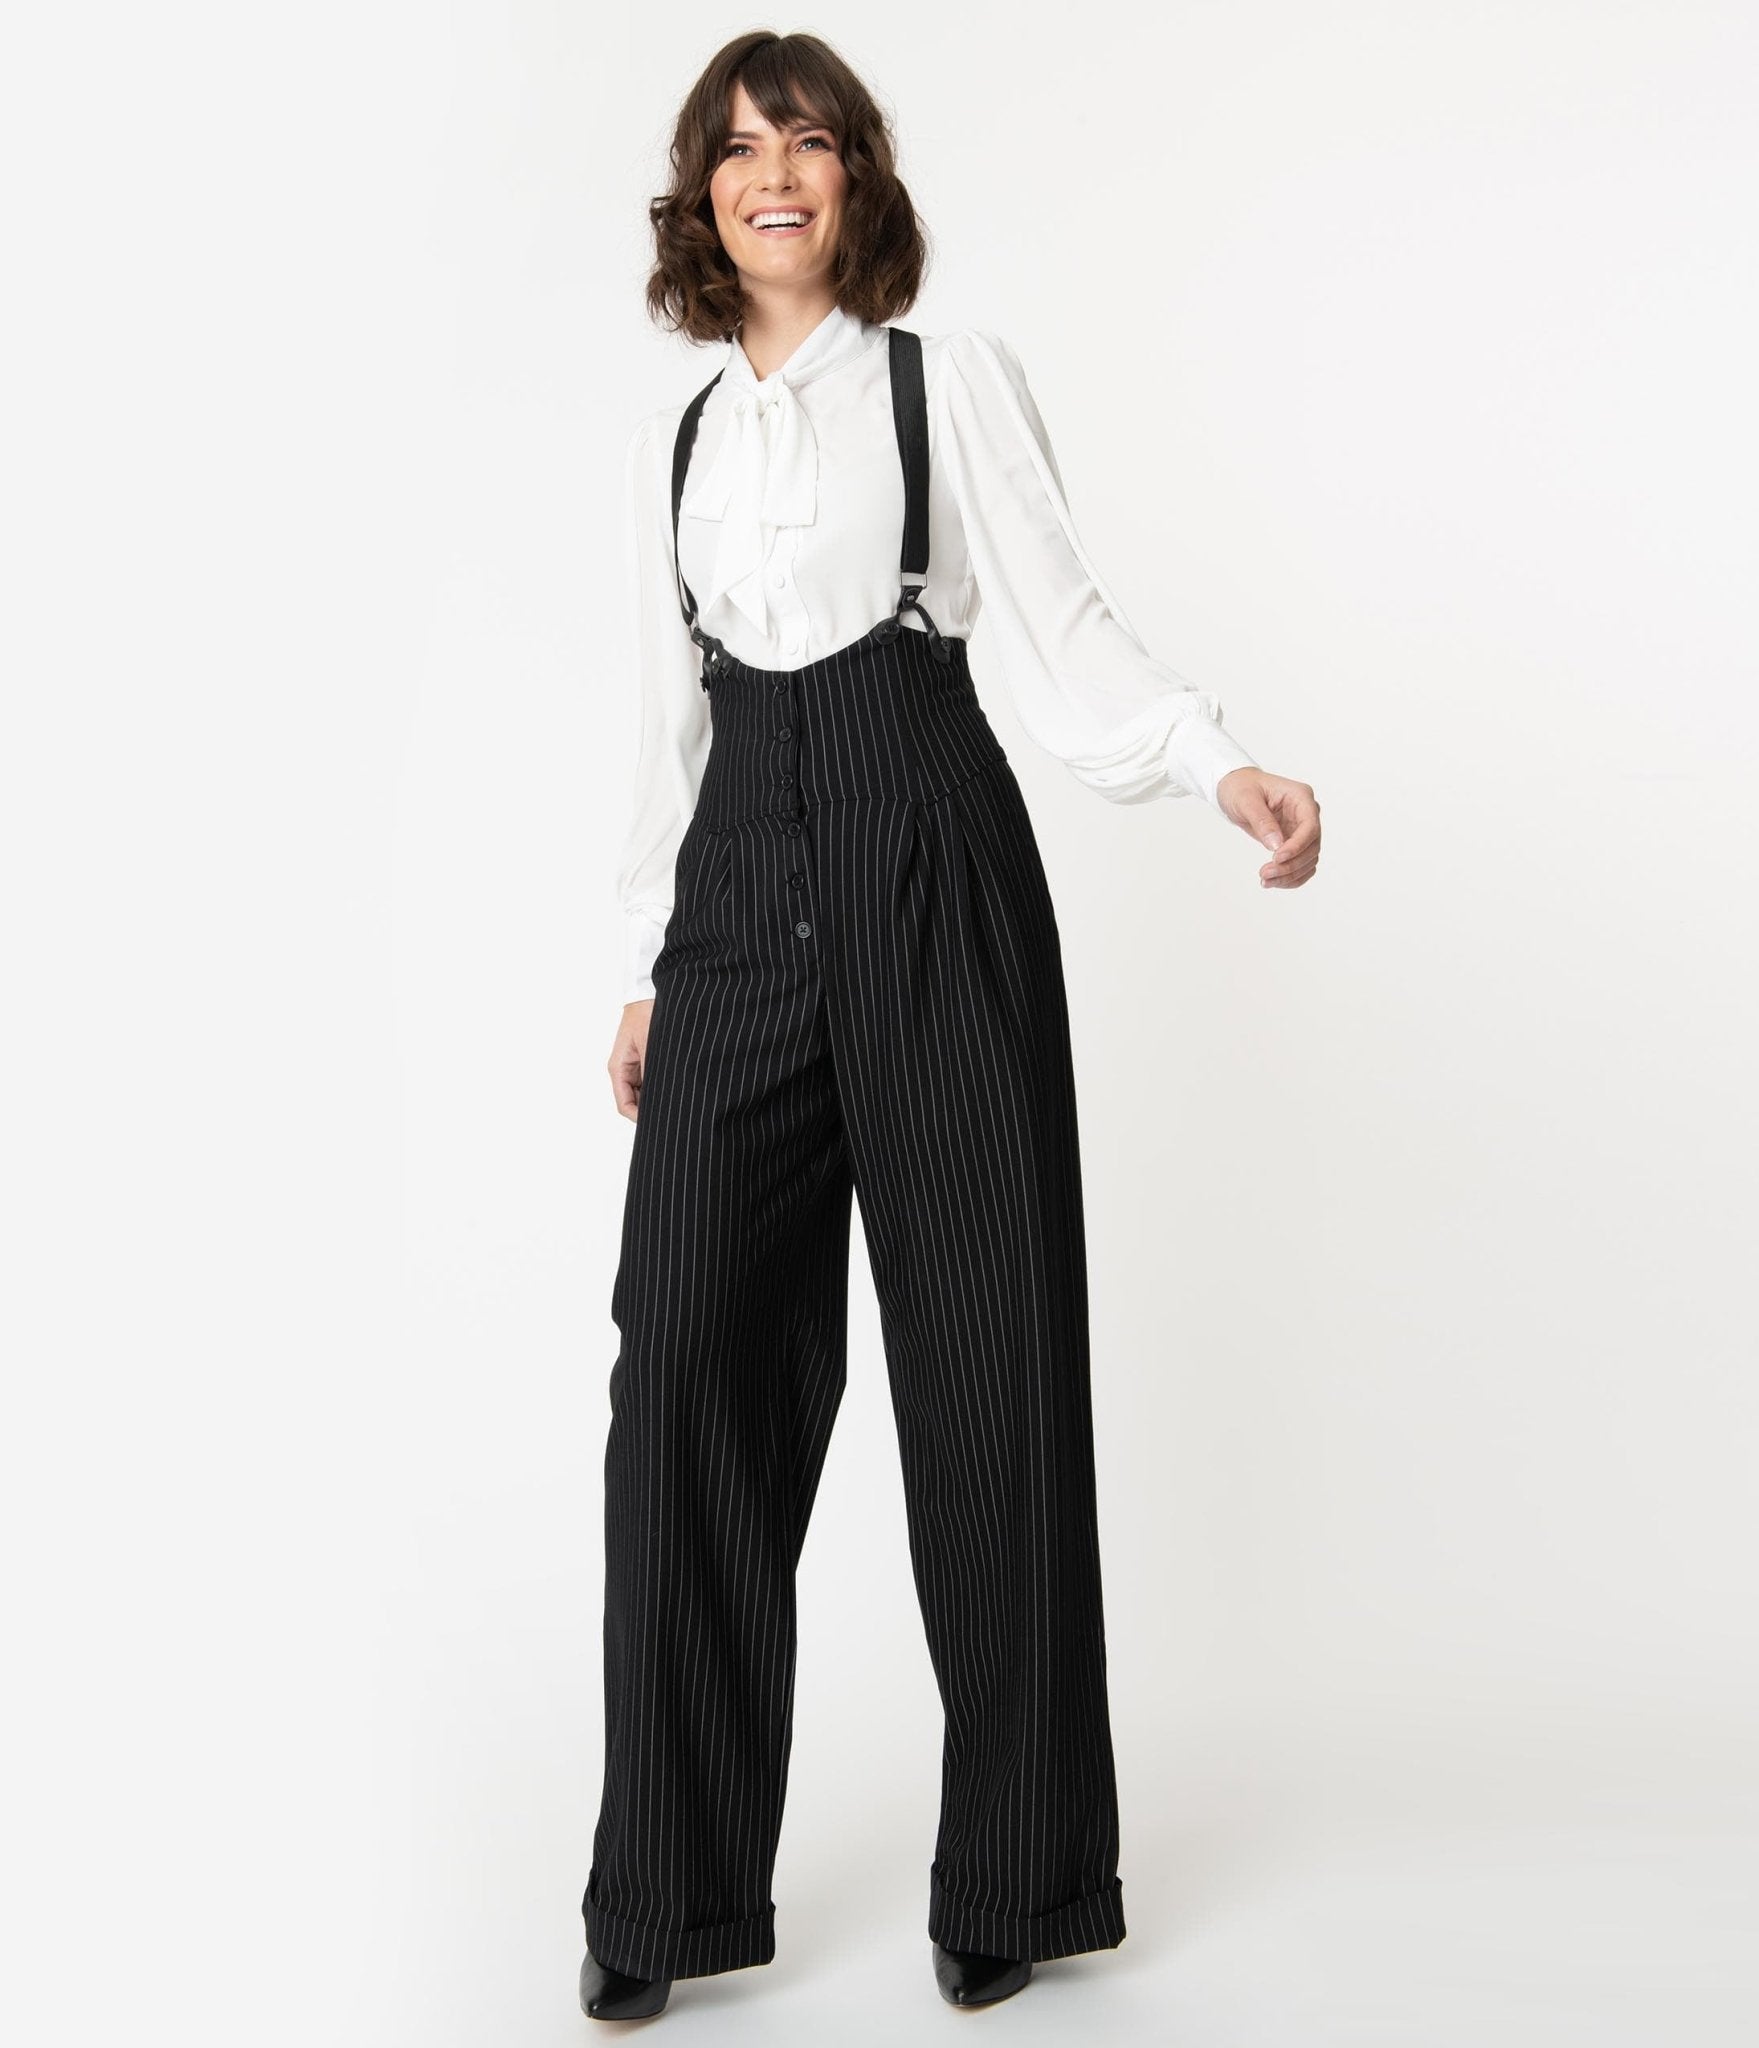 https://www.unique-vintage.com/cdn/shop/products/unique-vintage-black-white-pin-stripe-thelma-suspender-pants-662099.jpg?v=1703098651